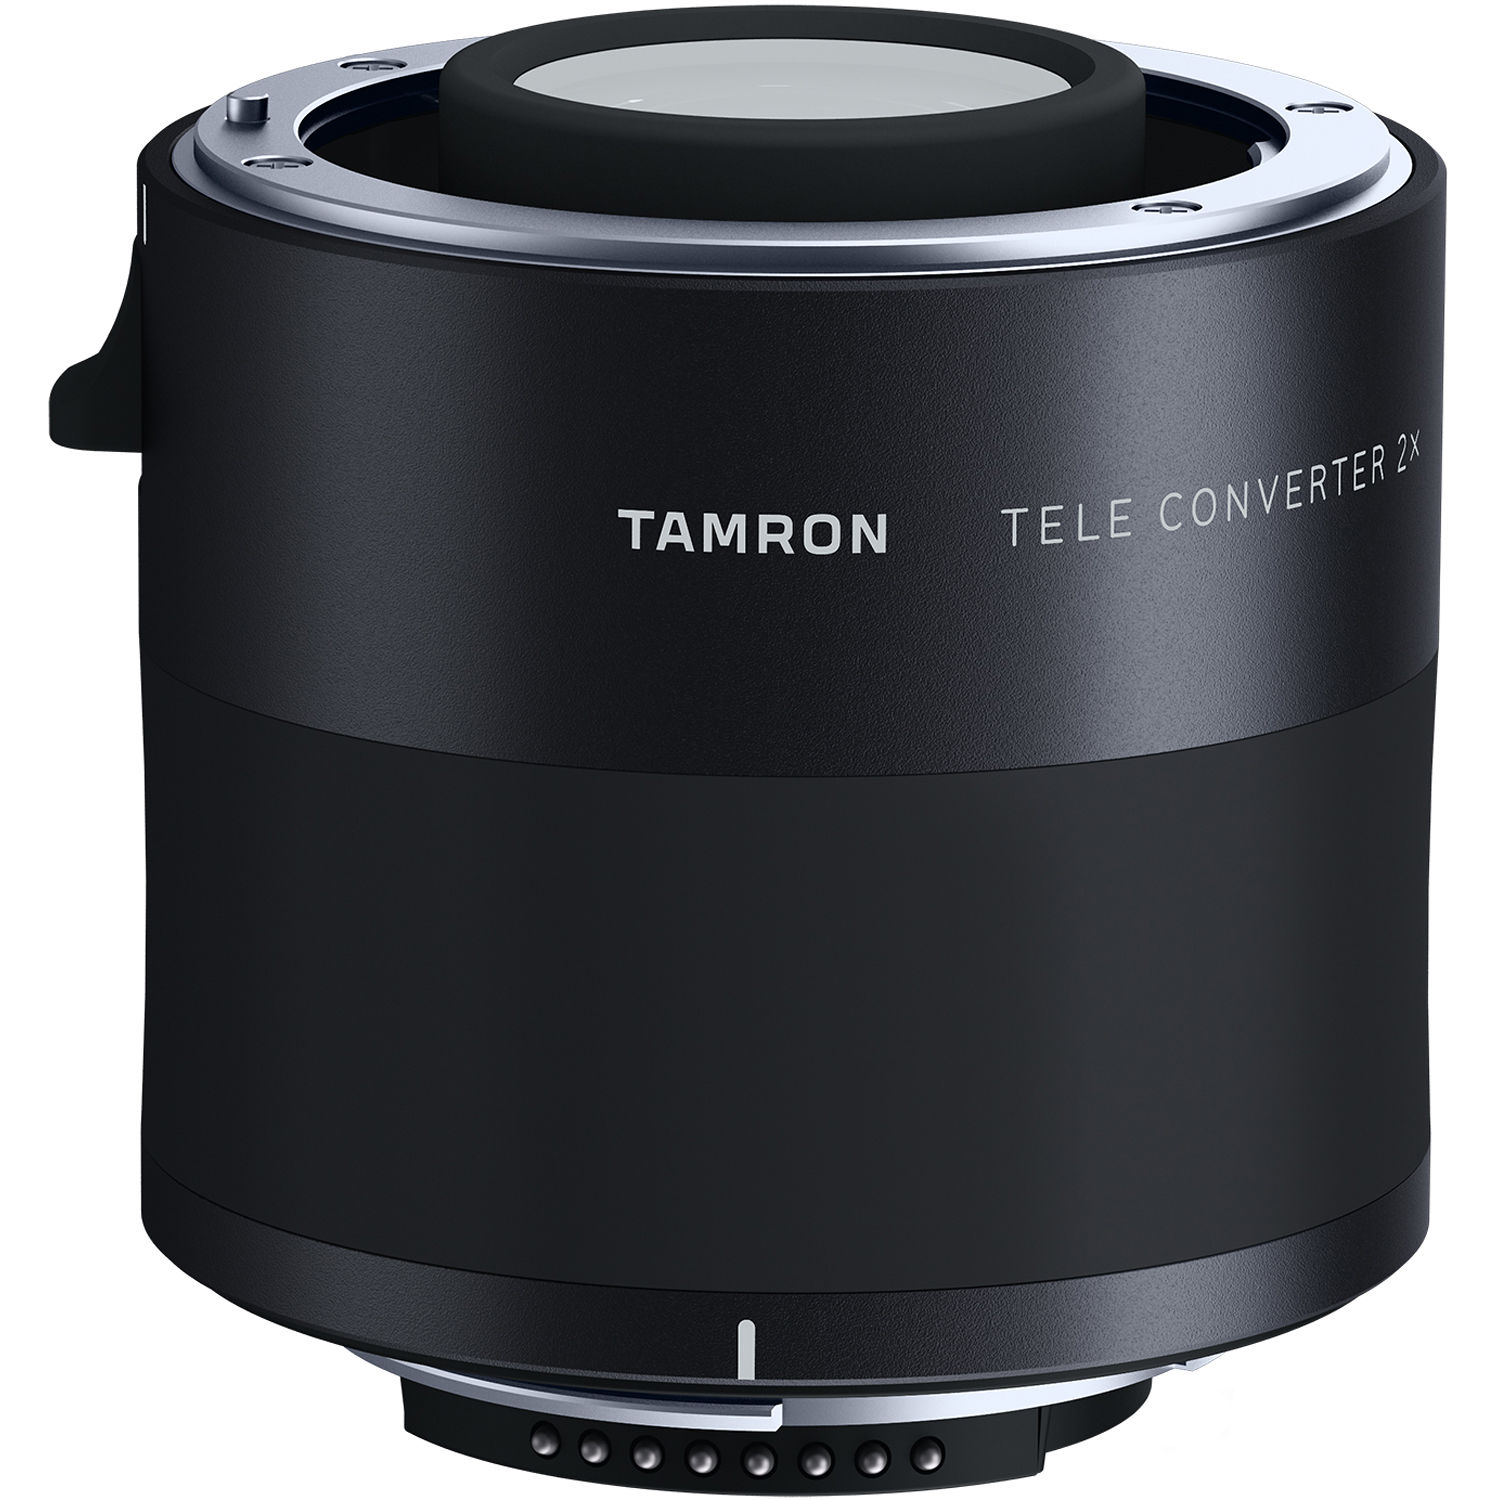 Tamron 2.0X Teleconverter for Nikon F